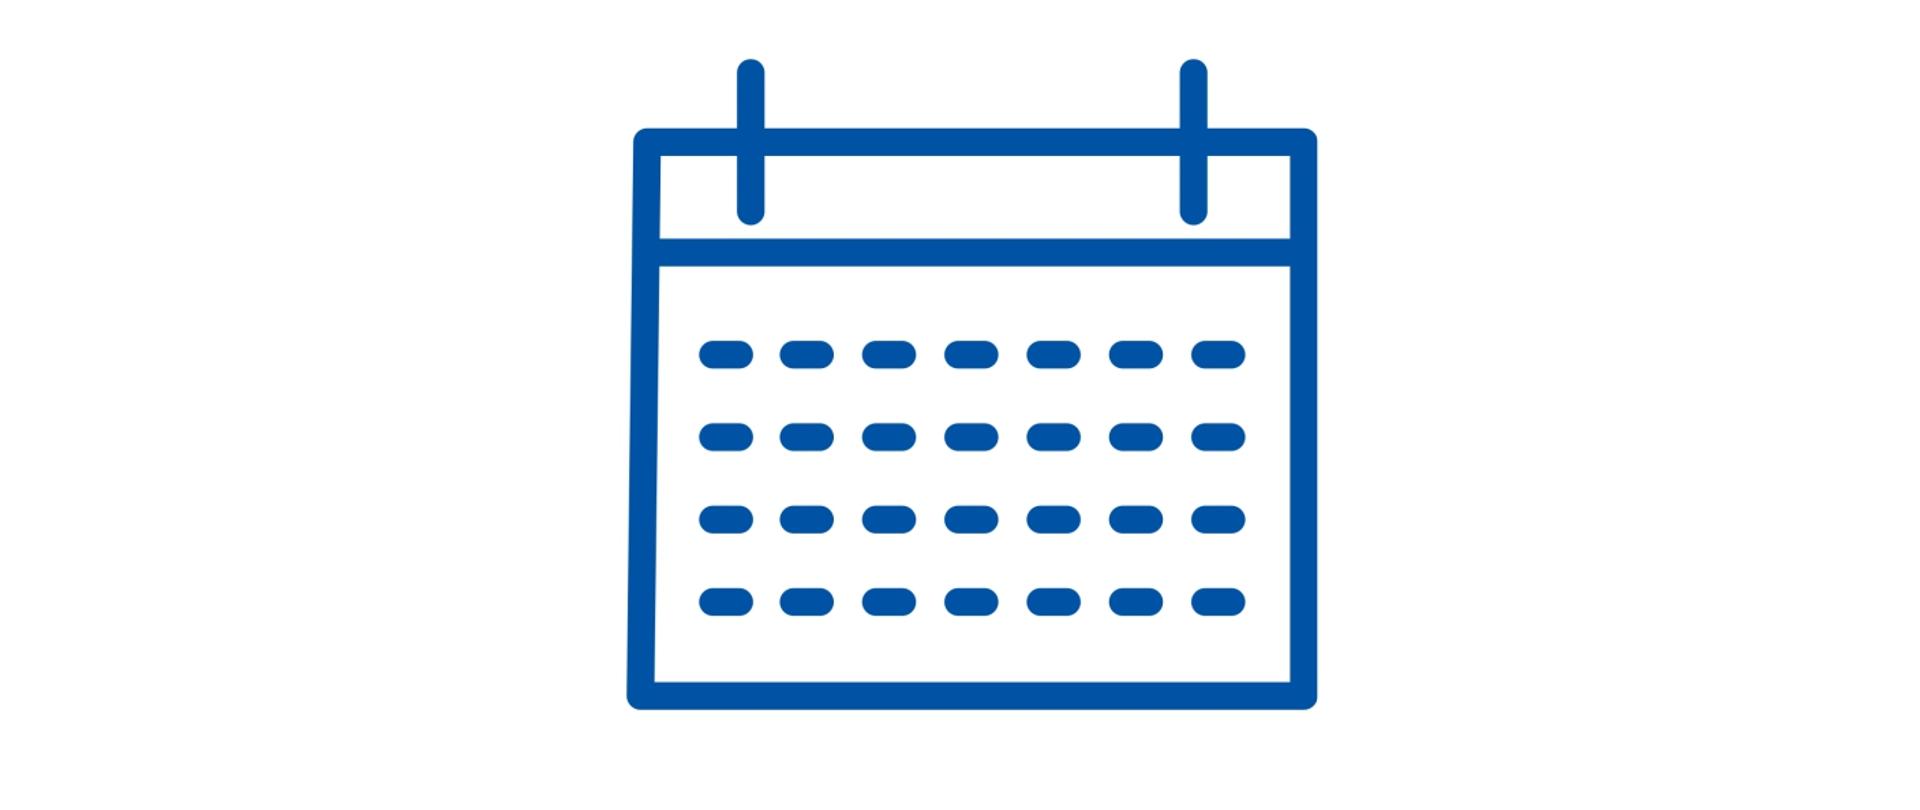 Grafika przedstawia kartkę z kalendarza utrzymaną w stylu logotypu